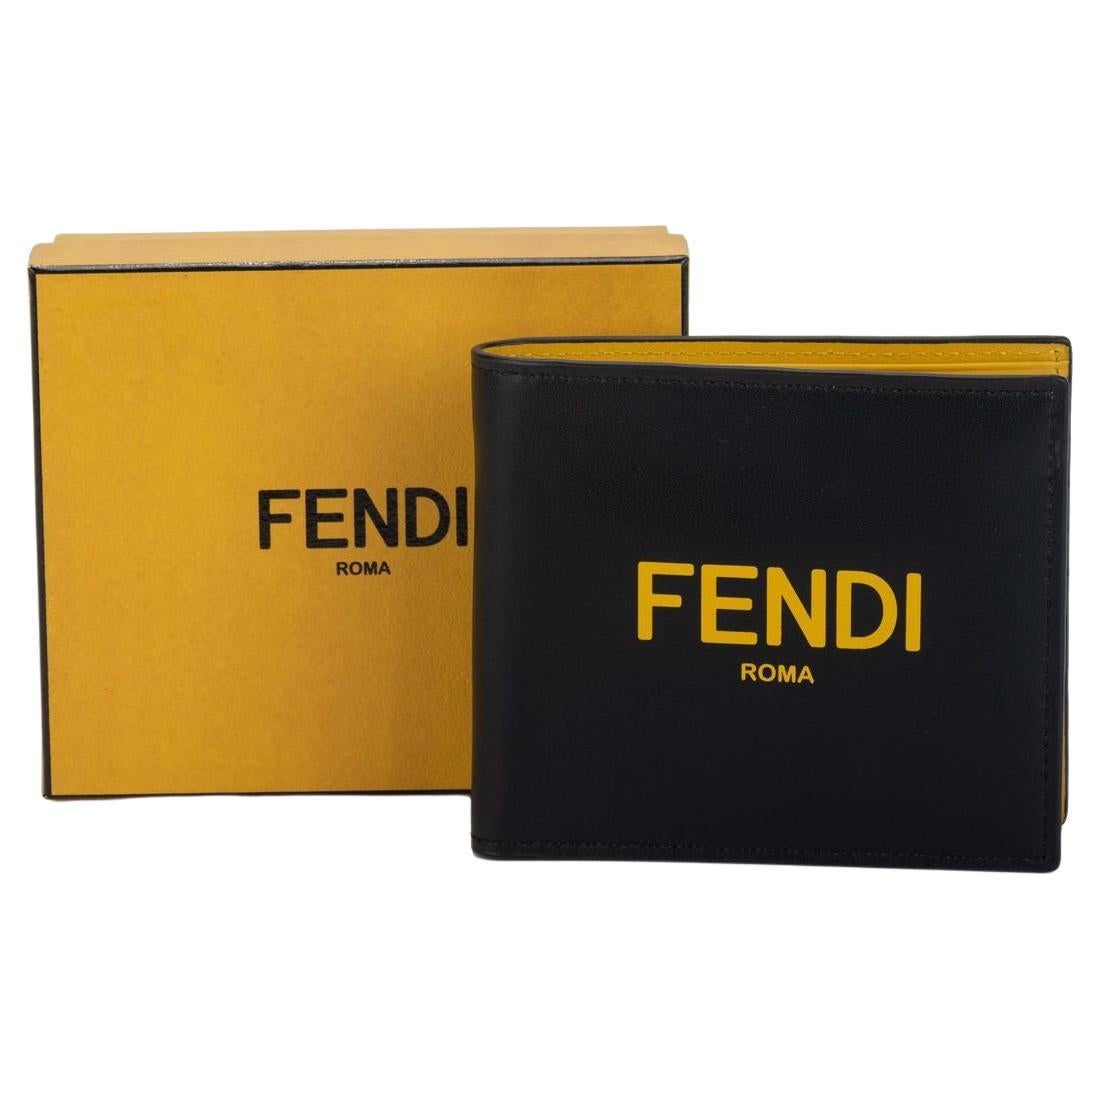 Fendi Monogram 10 IPhone Case NIB - Vintage Lux